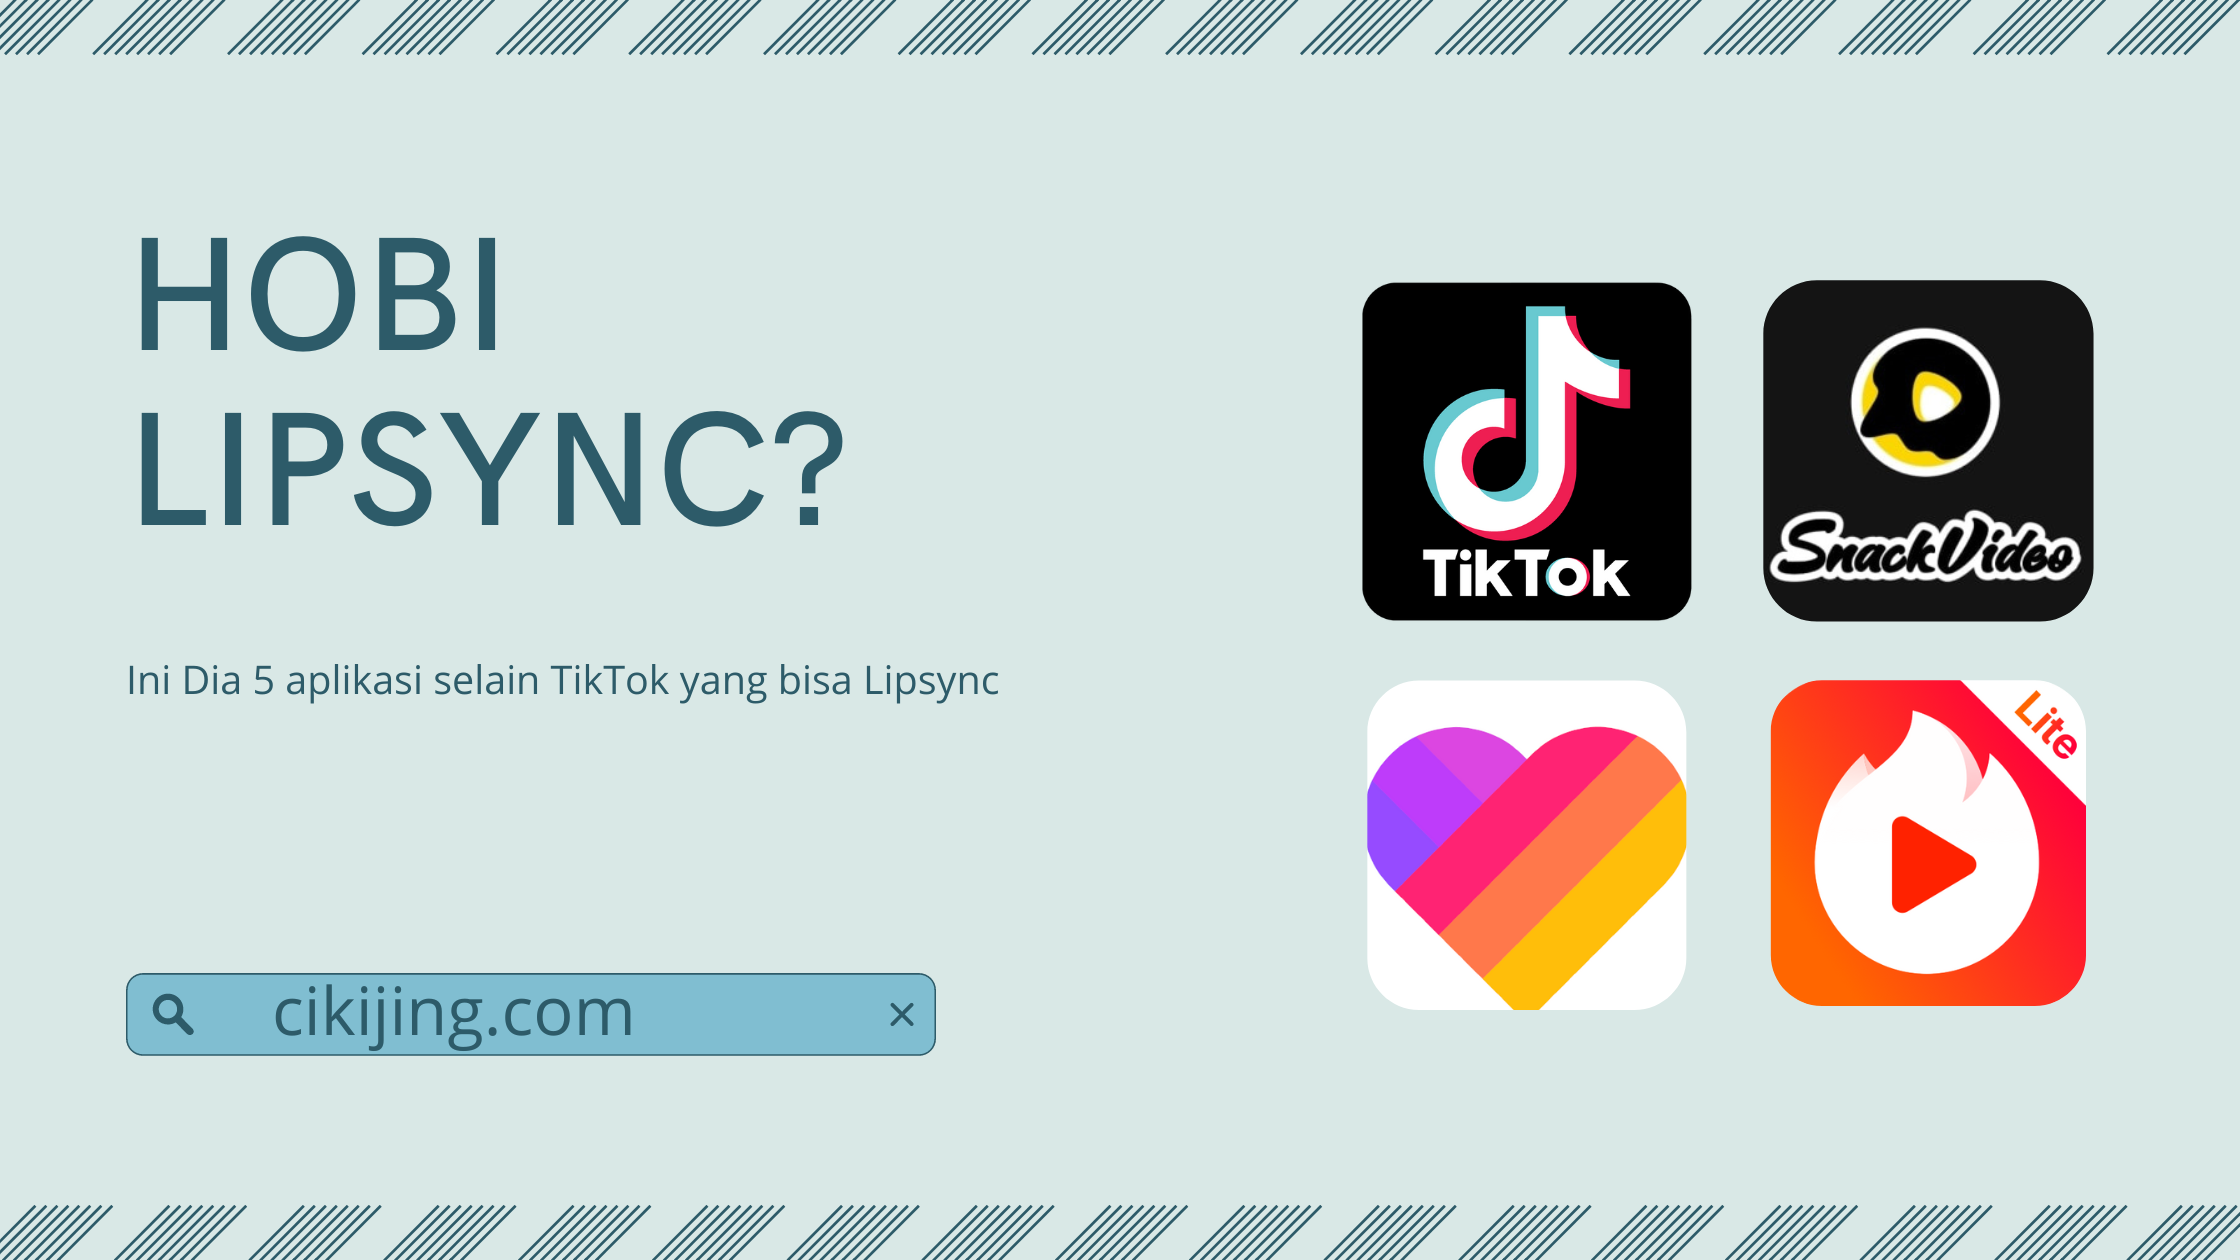 Ini Dia 5 aplikasi selain TikTok yang bisa Lipsync